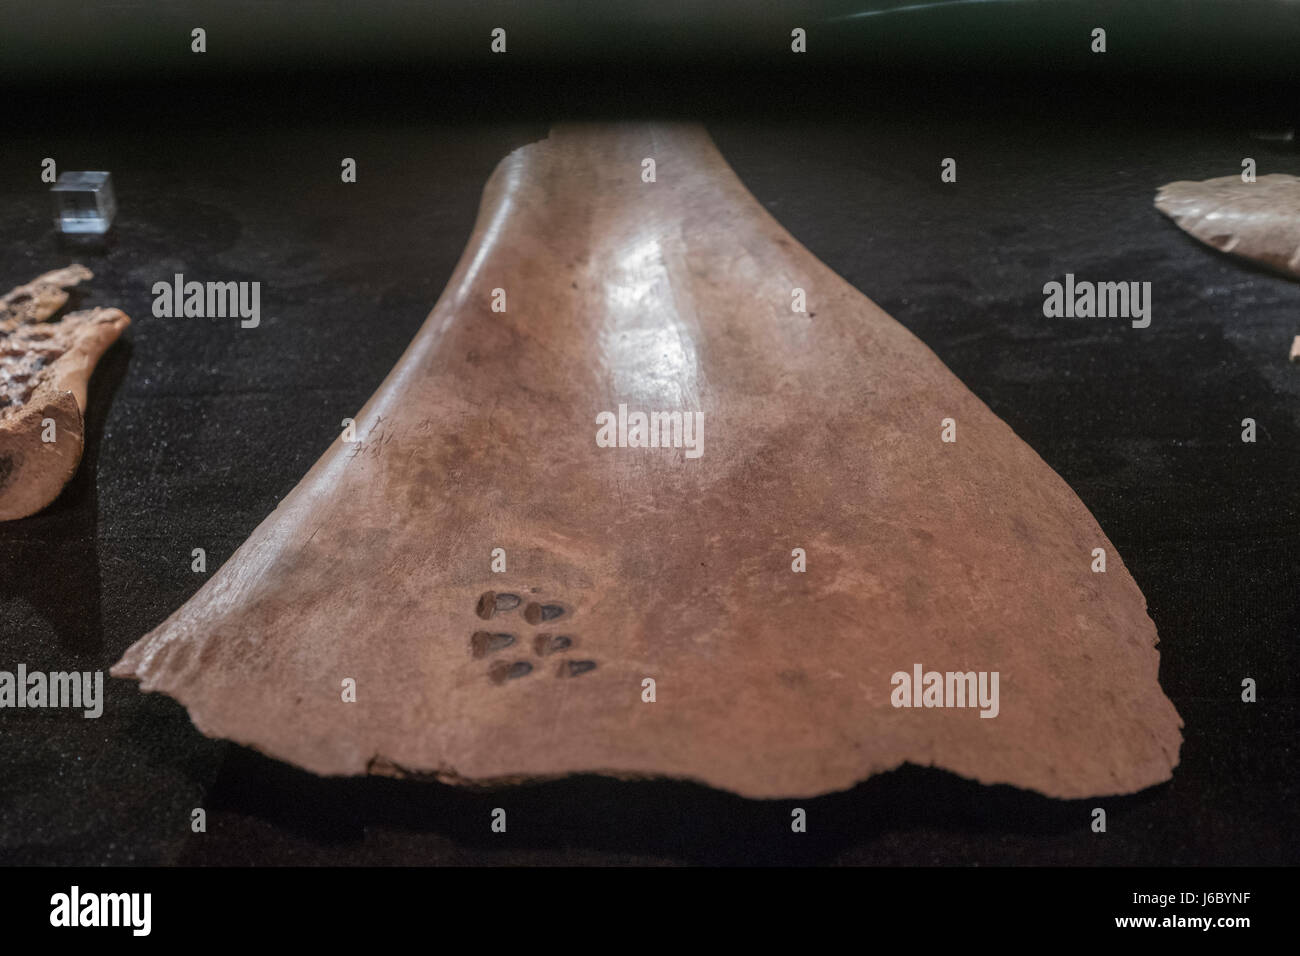 Oracle Knochen geschnitzt mit Zeichen. Späte Shang-Dynastie (13. Jahrhundert V.U.Z - Mitte 11. Jahrhundert V.U.Z) entdeckt in Yin Relikt in Anyang, Henan. Stockfoto